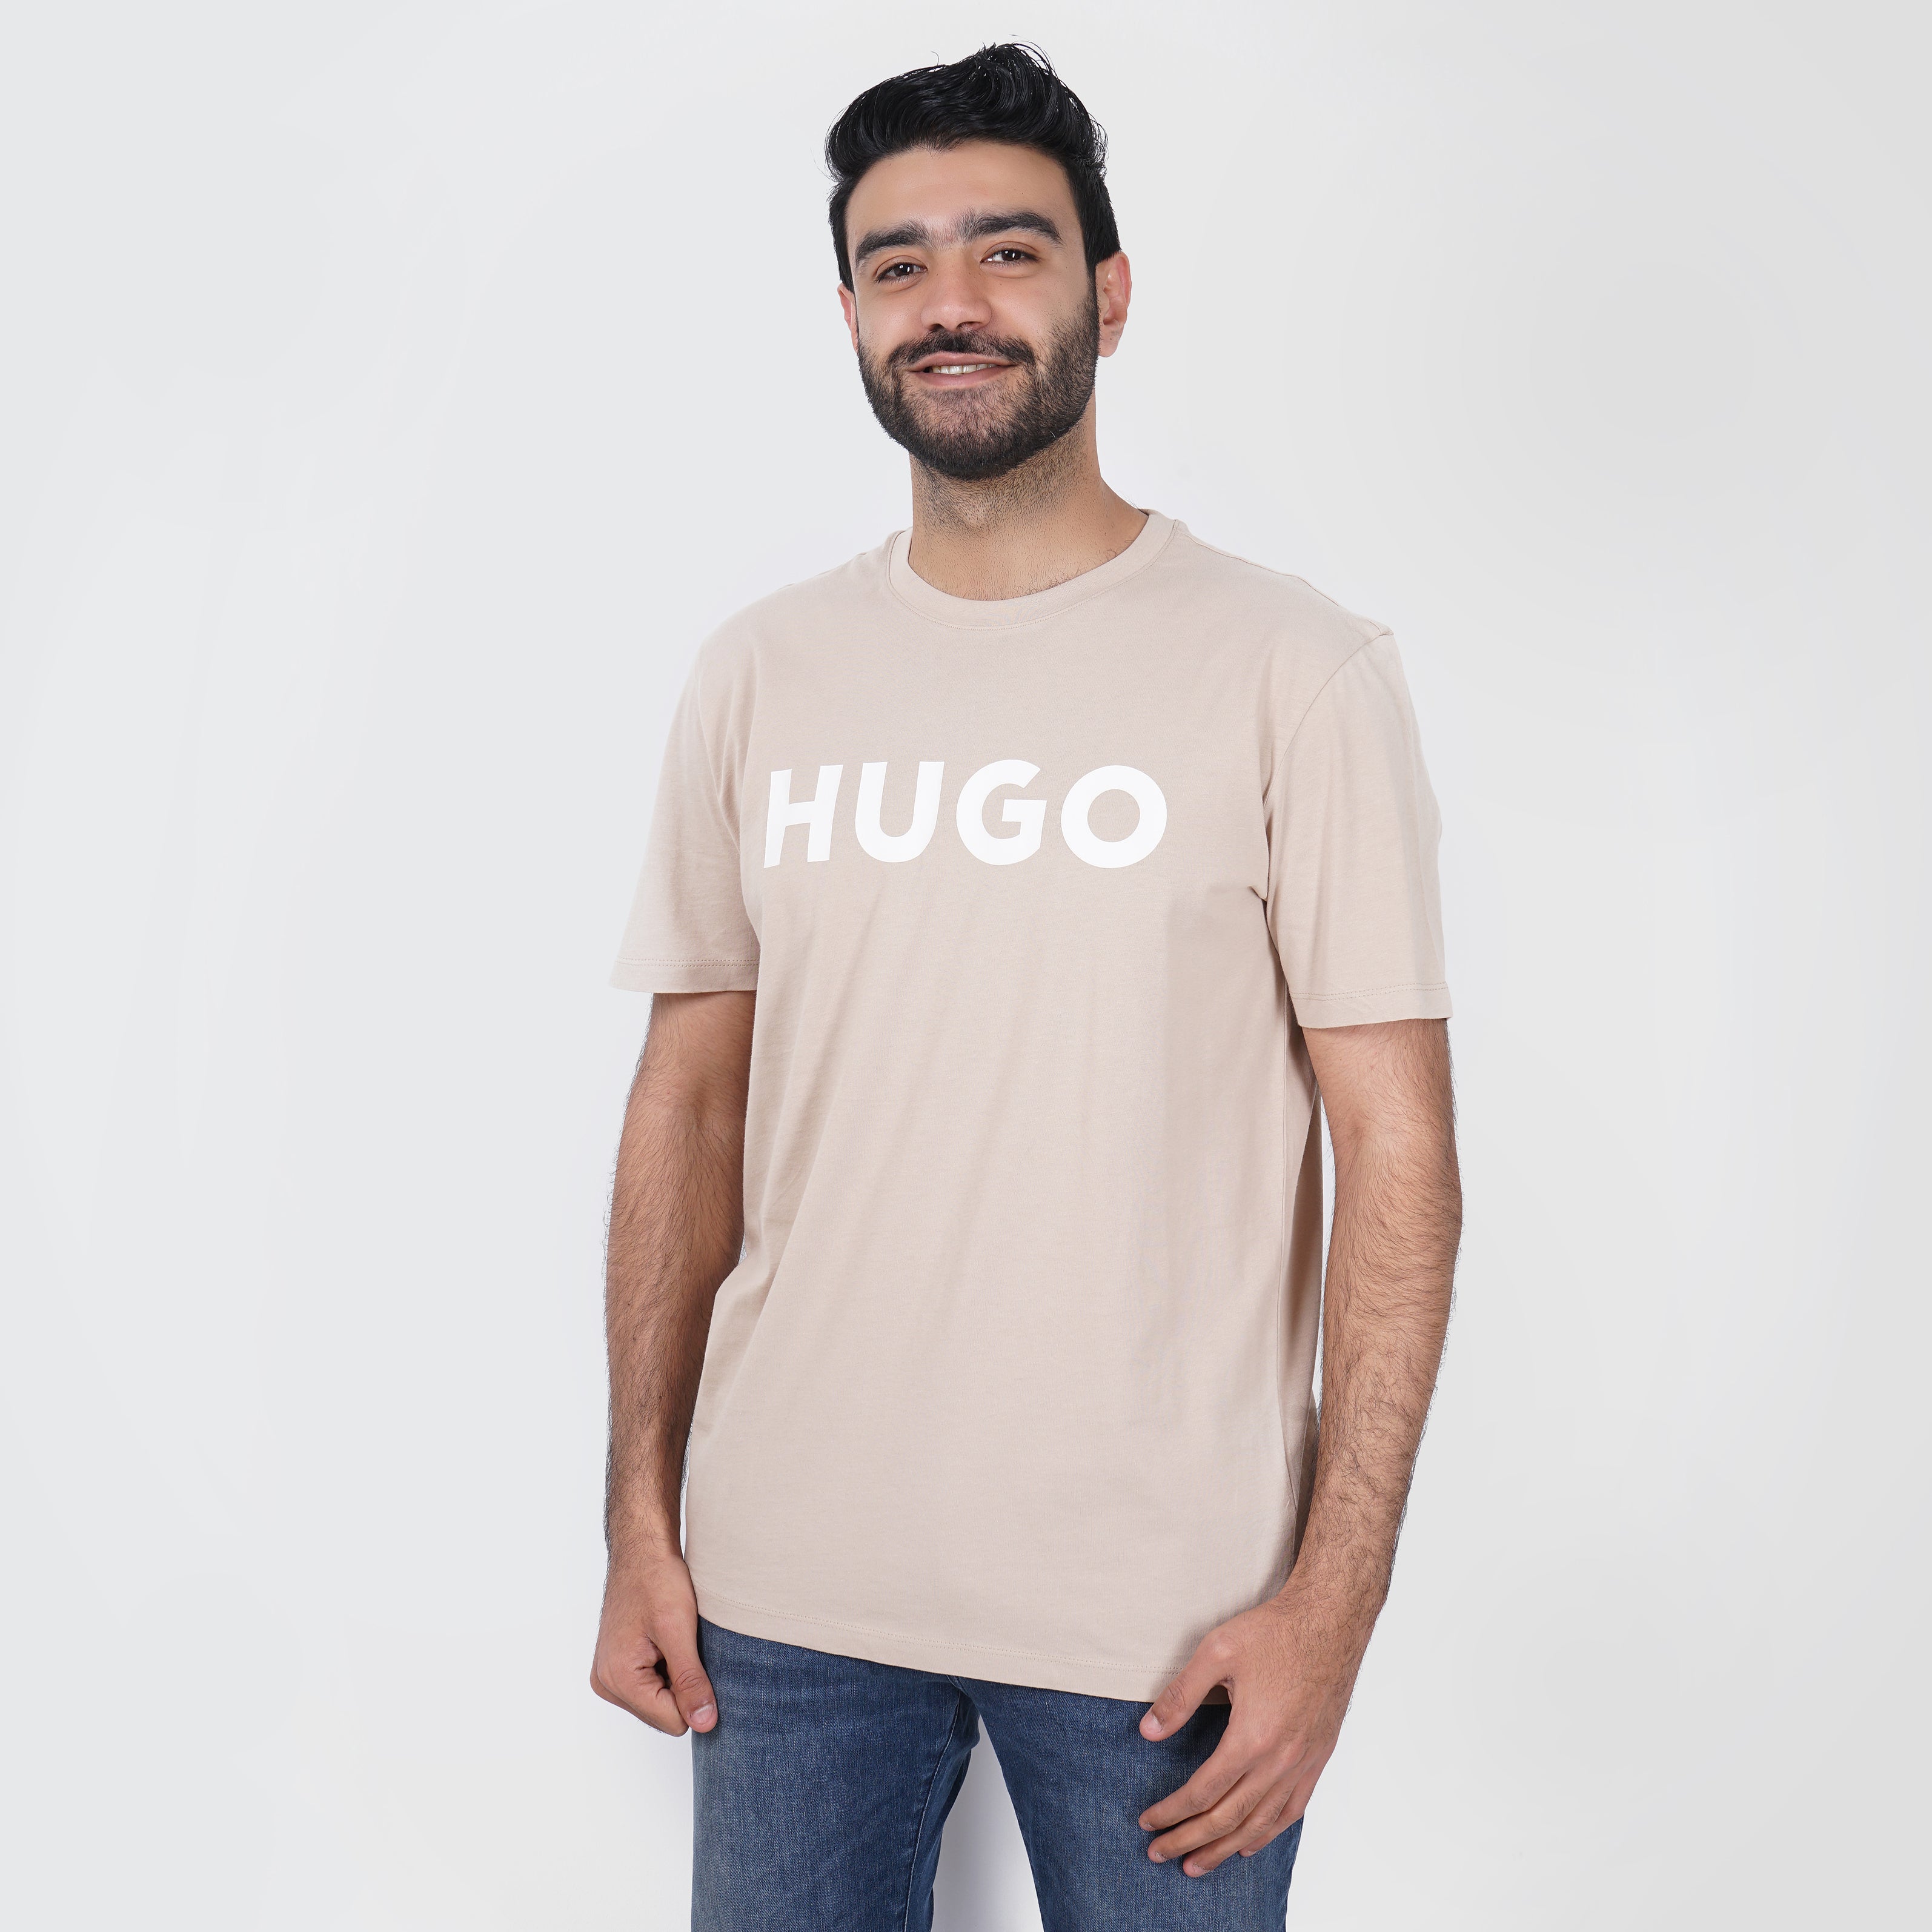 Original HUGO BOSS T-Shirt with White Logo - Marca Deals - Hugo Boss